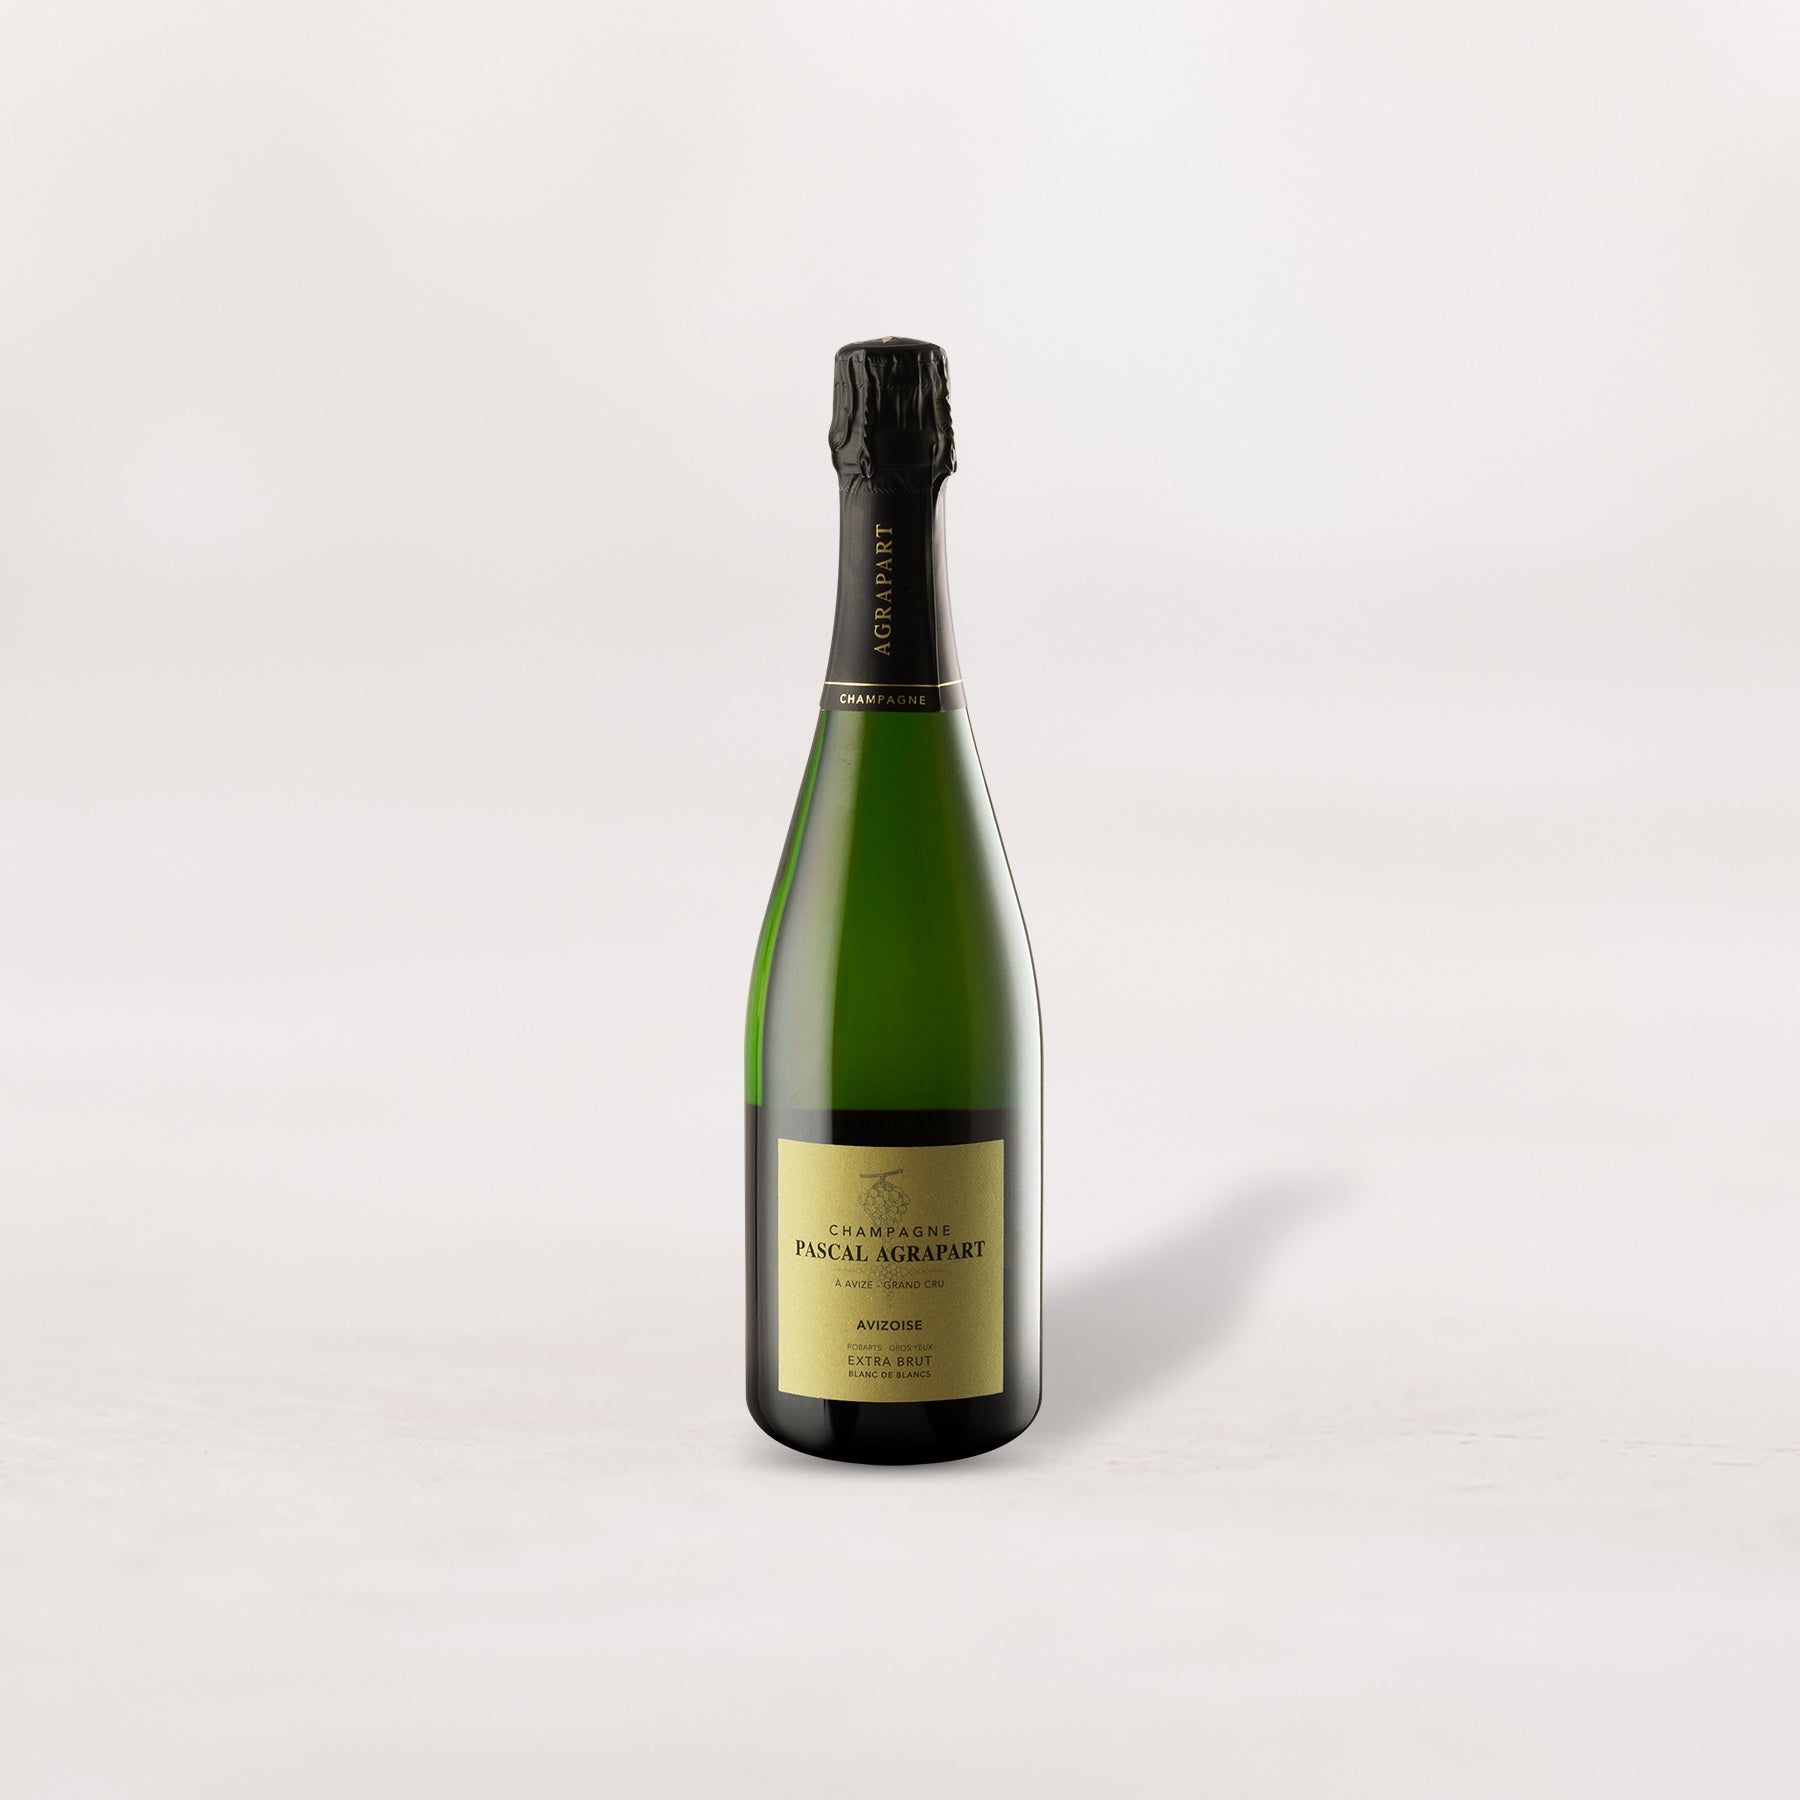 Champagne Pascal Agrapart, "Avizoise" Grand Cru Blanc de Blancs